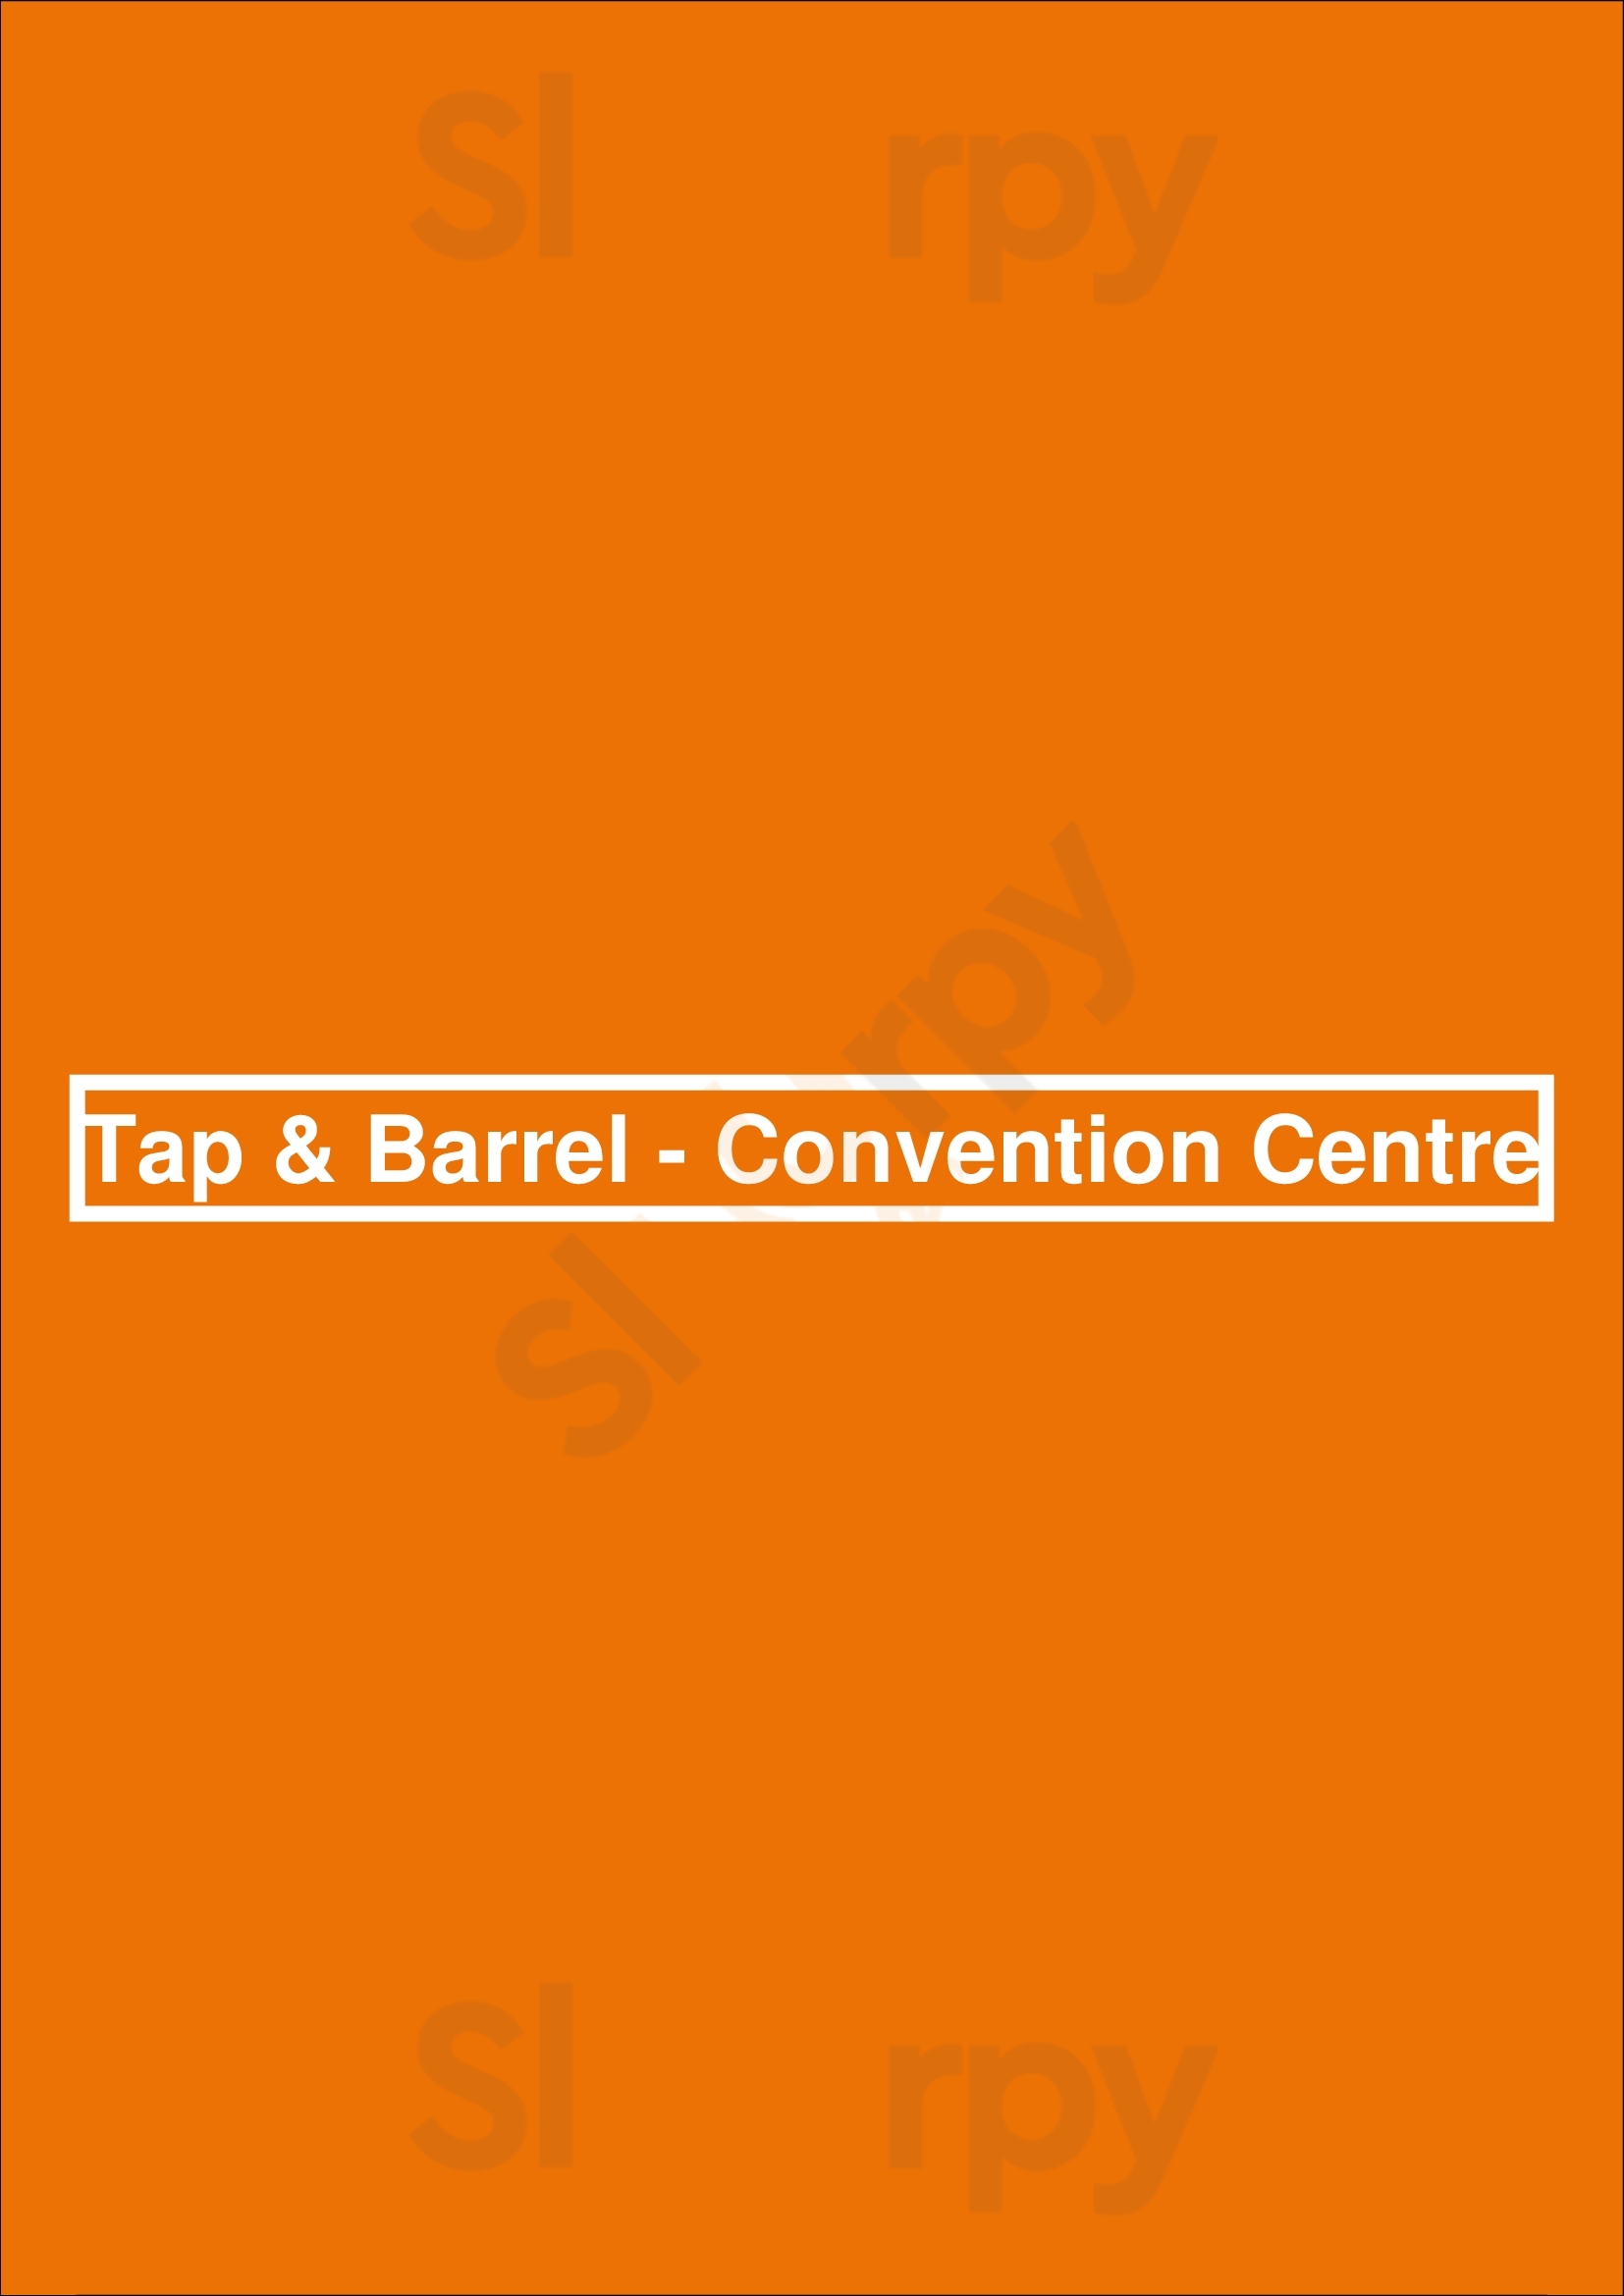 Tap & Barrel - Convention Centre Vancouver Menu - 1